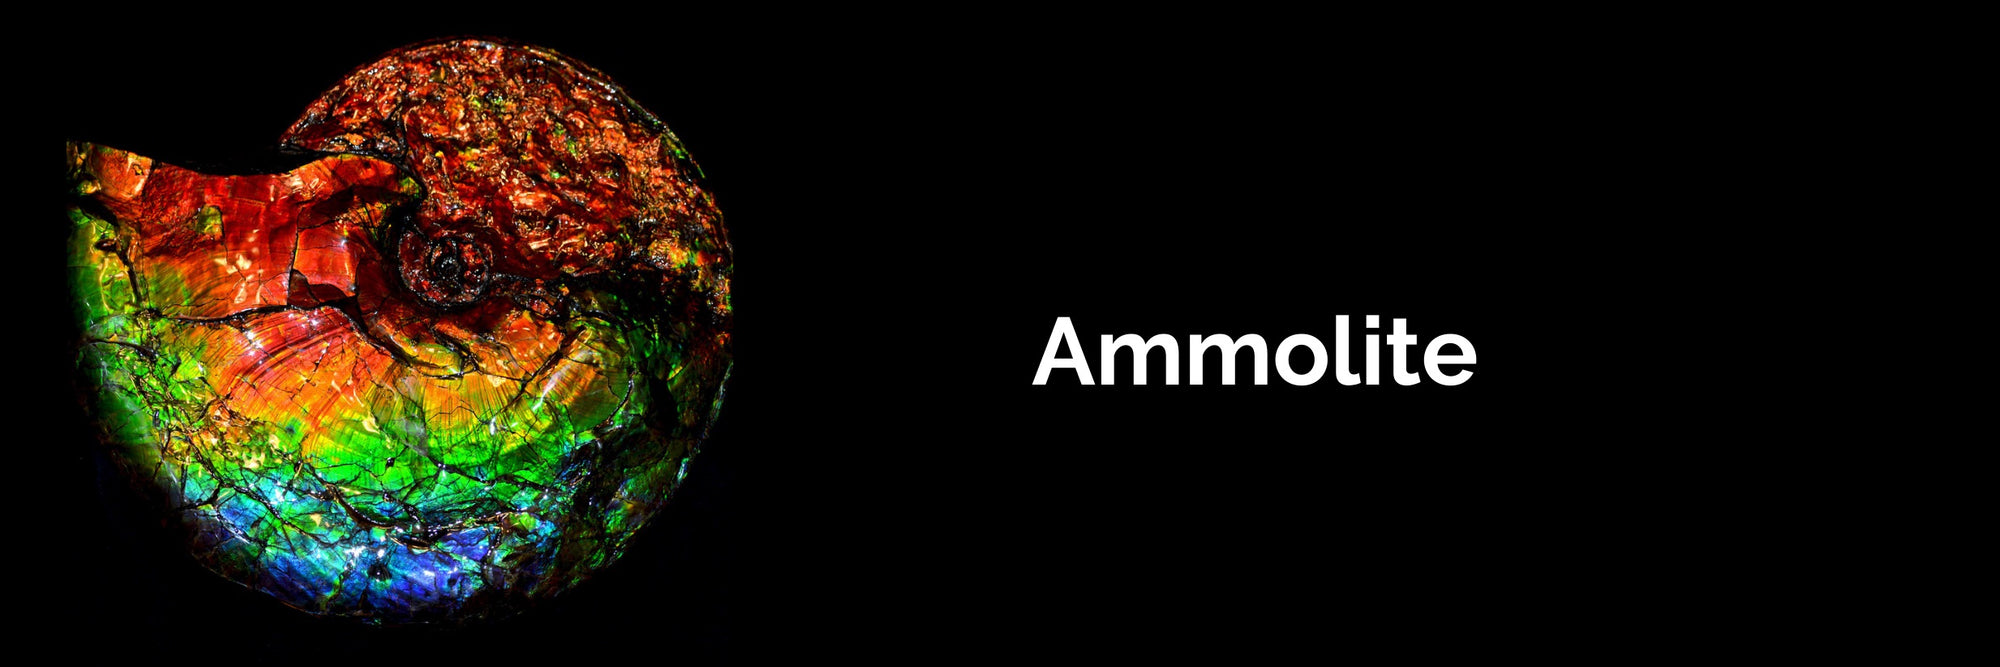 Monarch Ammolite